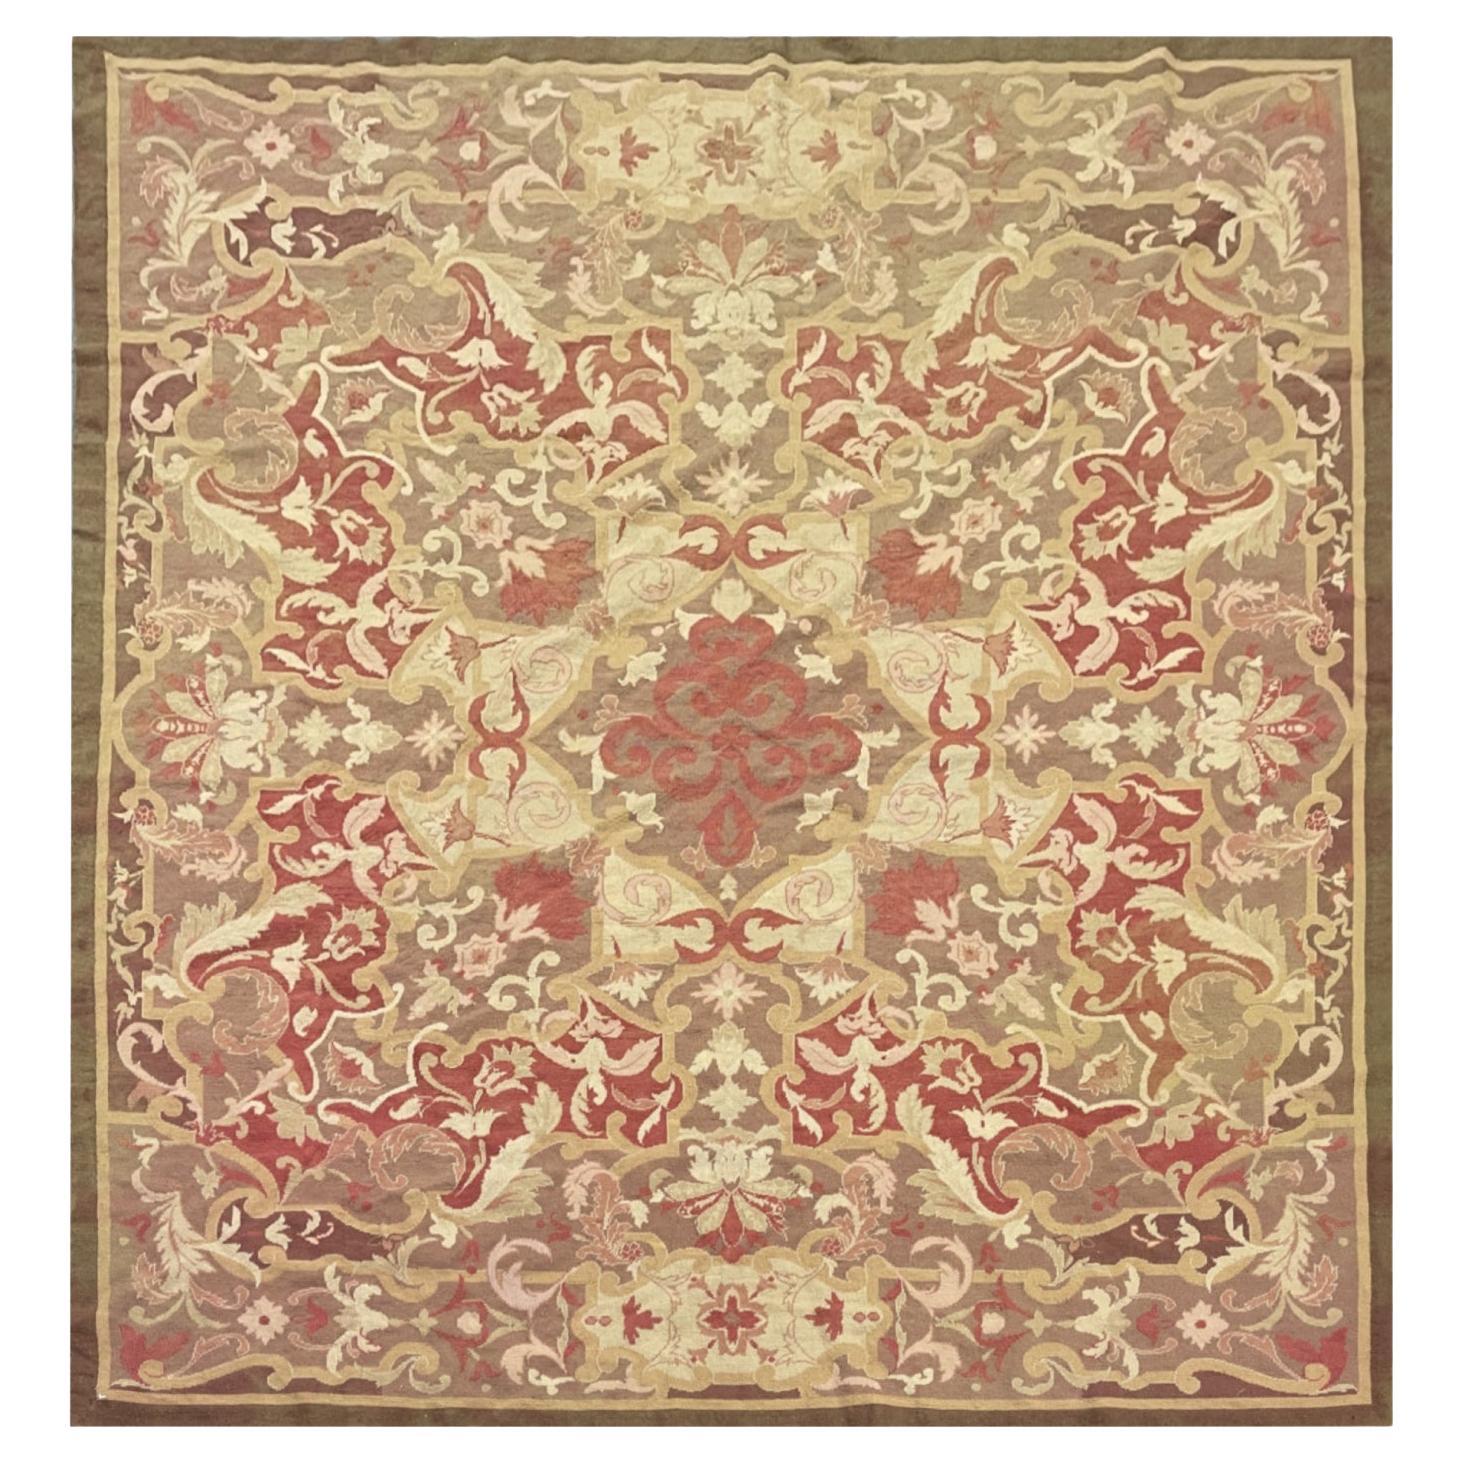 Traditioneller Teppich Quadratischer Aubusson-Teppich Brauner Flächenteppich Handgewebte Wolle Needlepoint